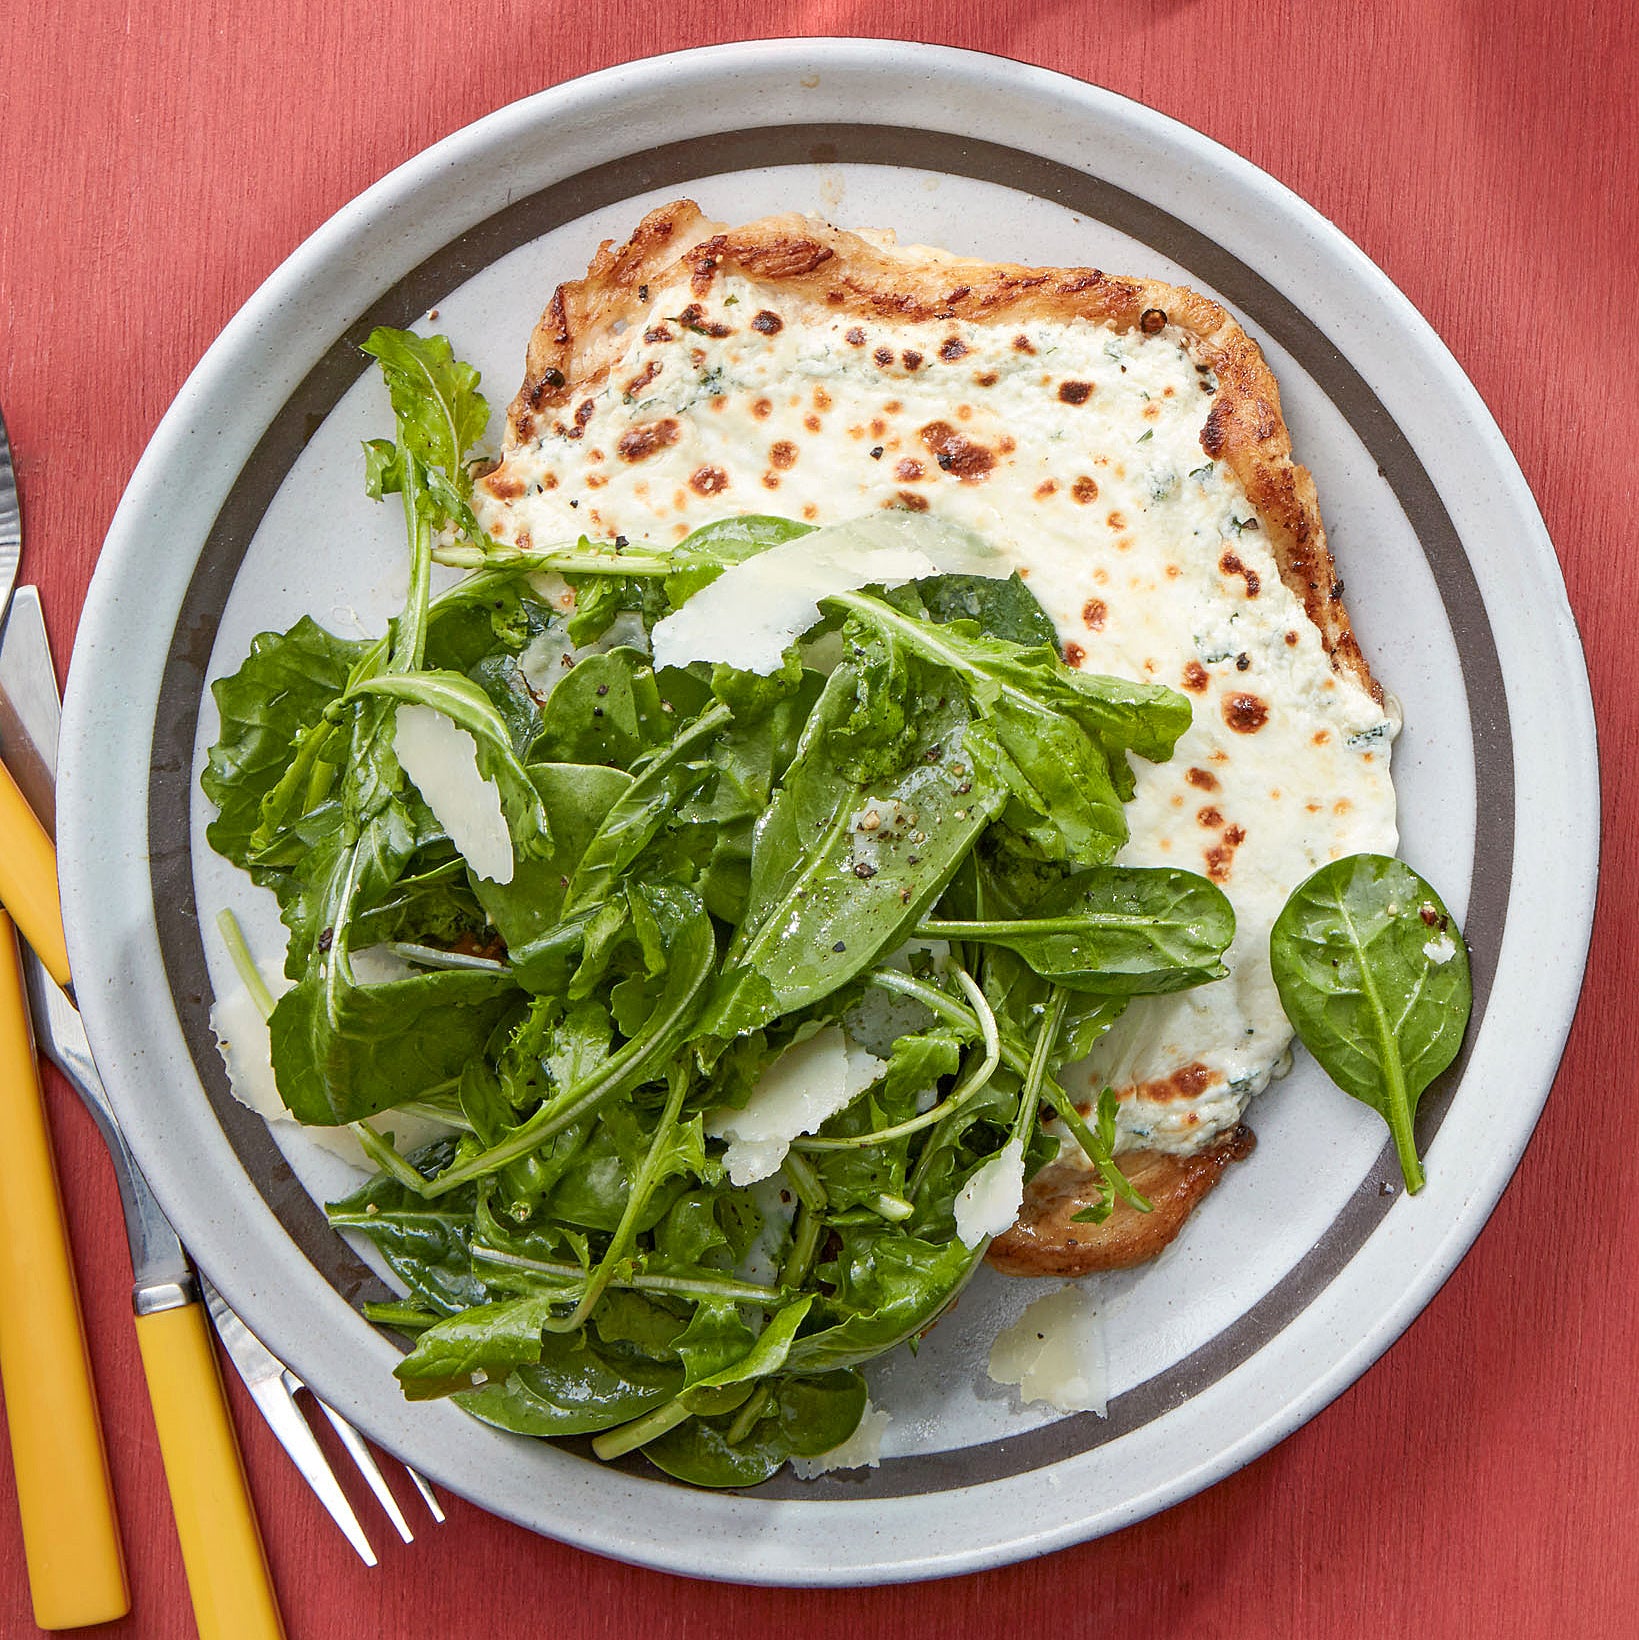 Chicken Paillard White "Pizzette" with Spinach & Arugula Salad